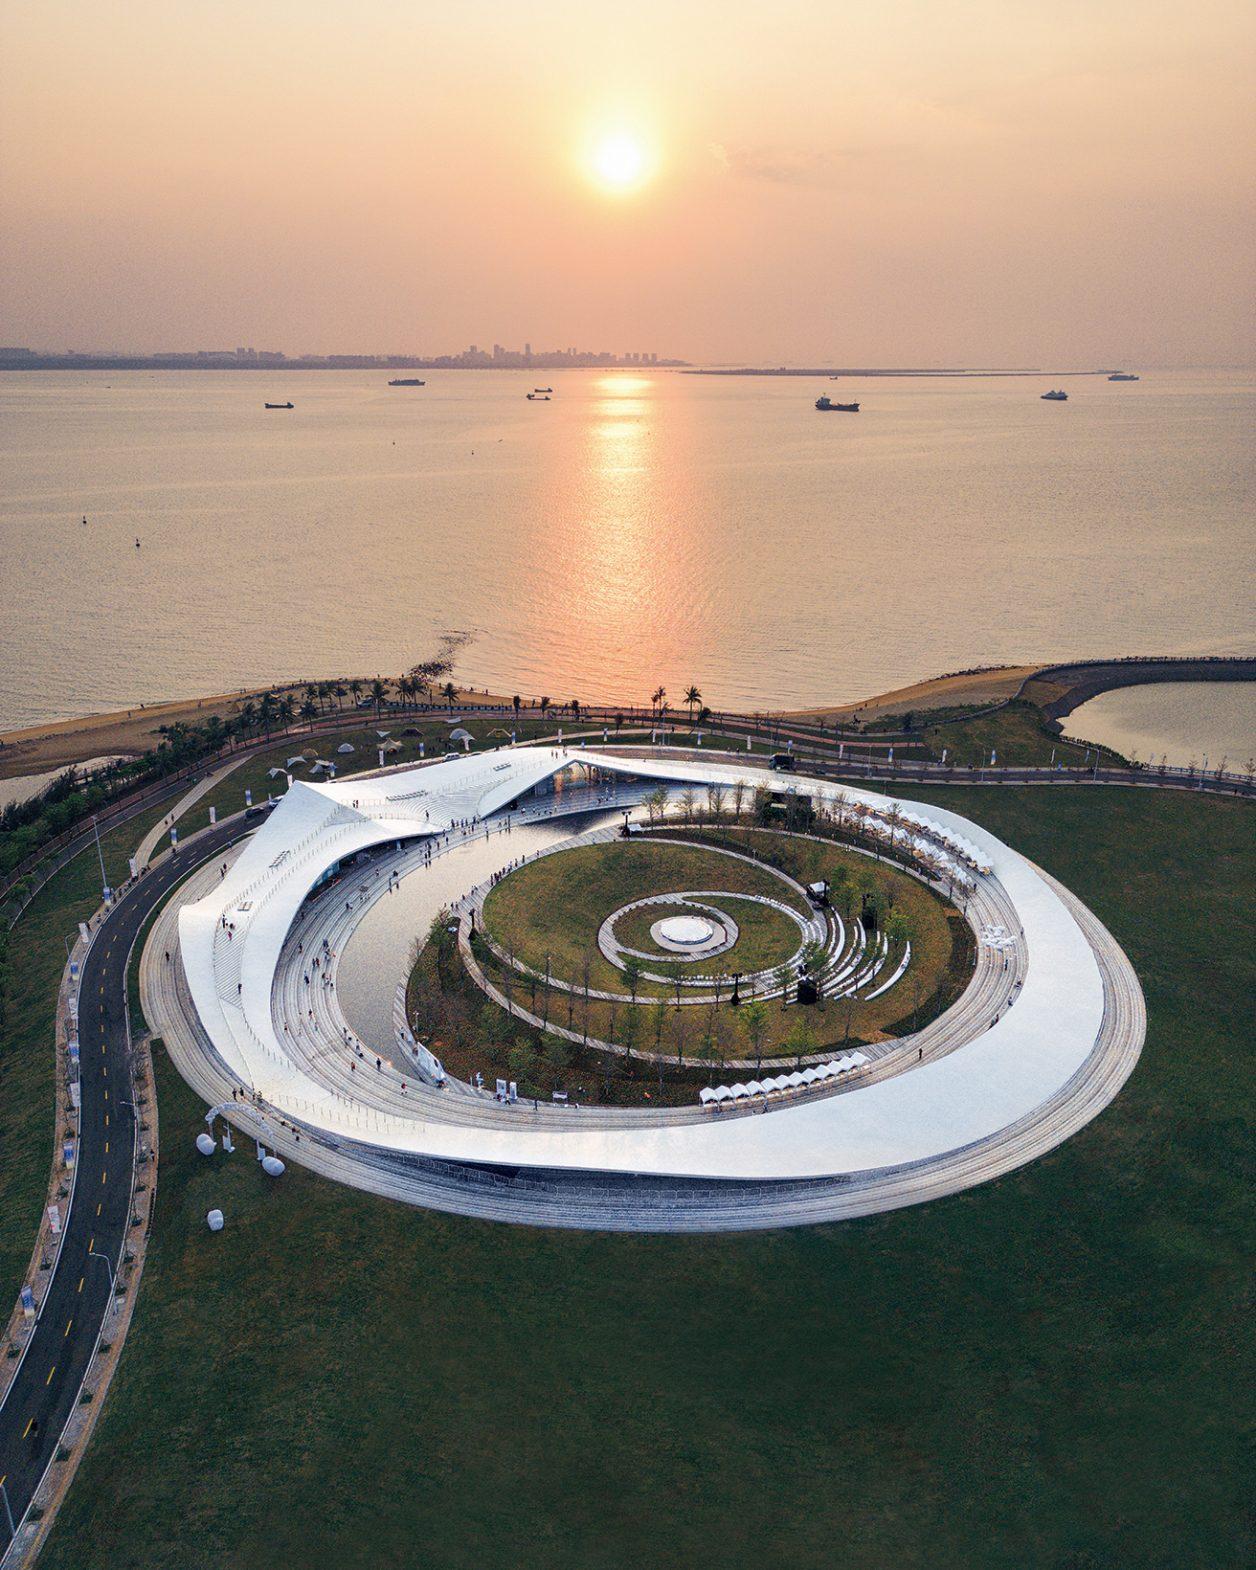 中国の海沿いに現れた、藤本壮介設計のパビリオン。